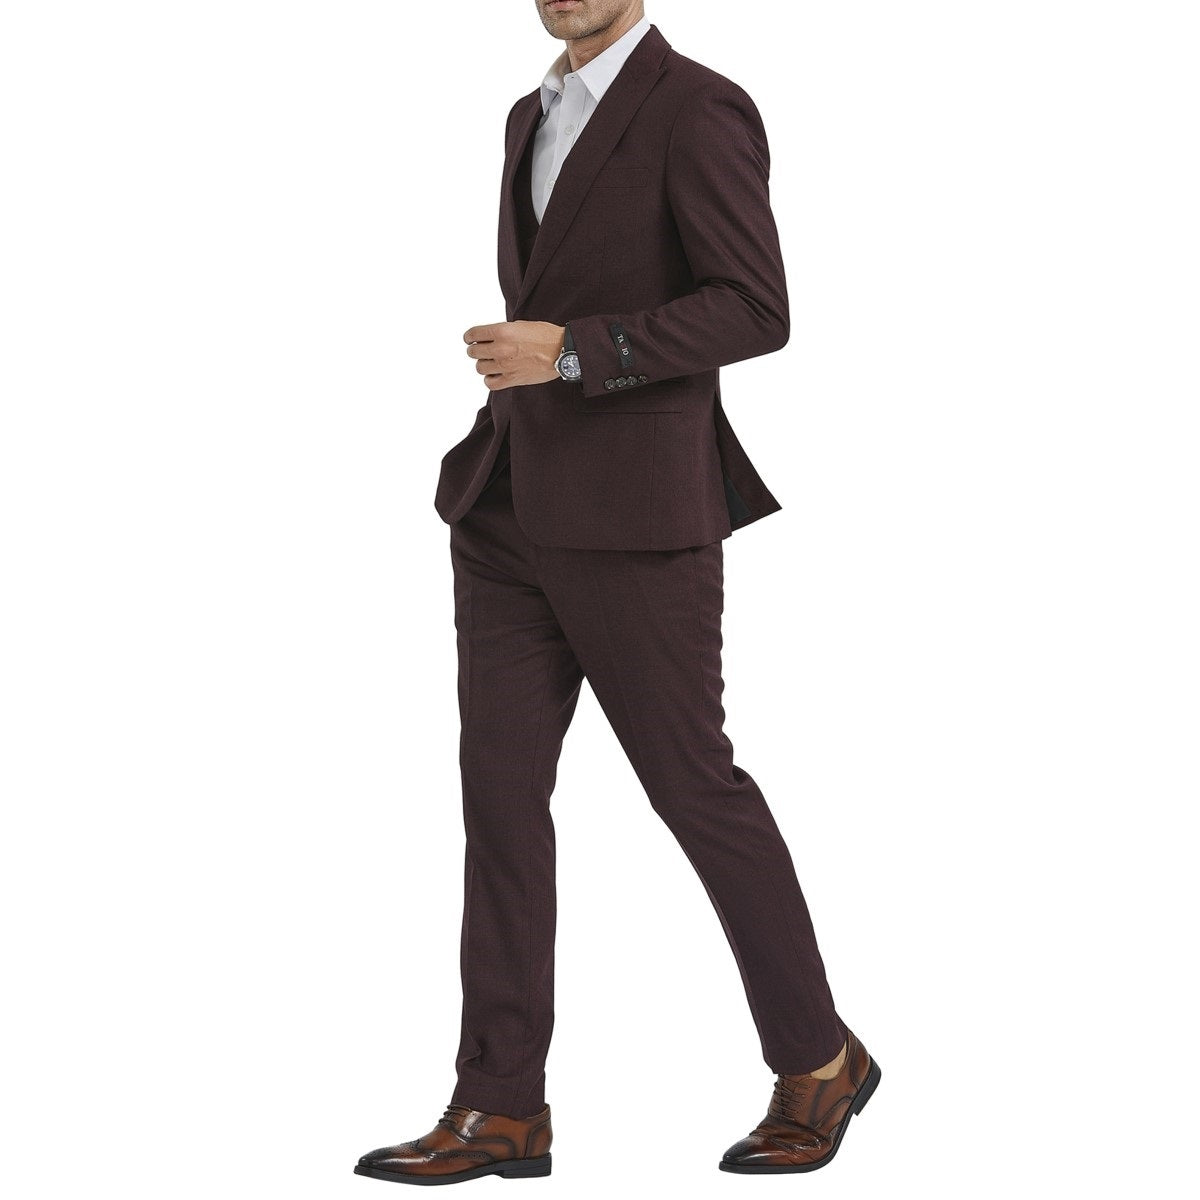 Traje Formal para Hombre TA-M349SK-03 - Formal Suit for Men